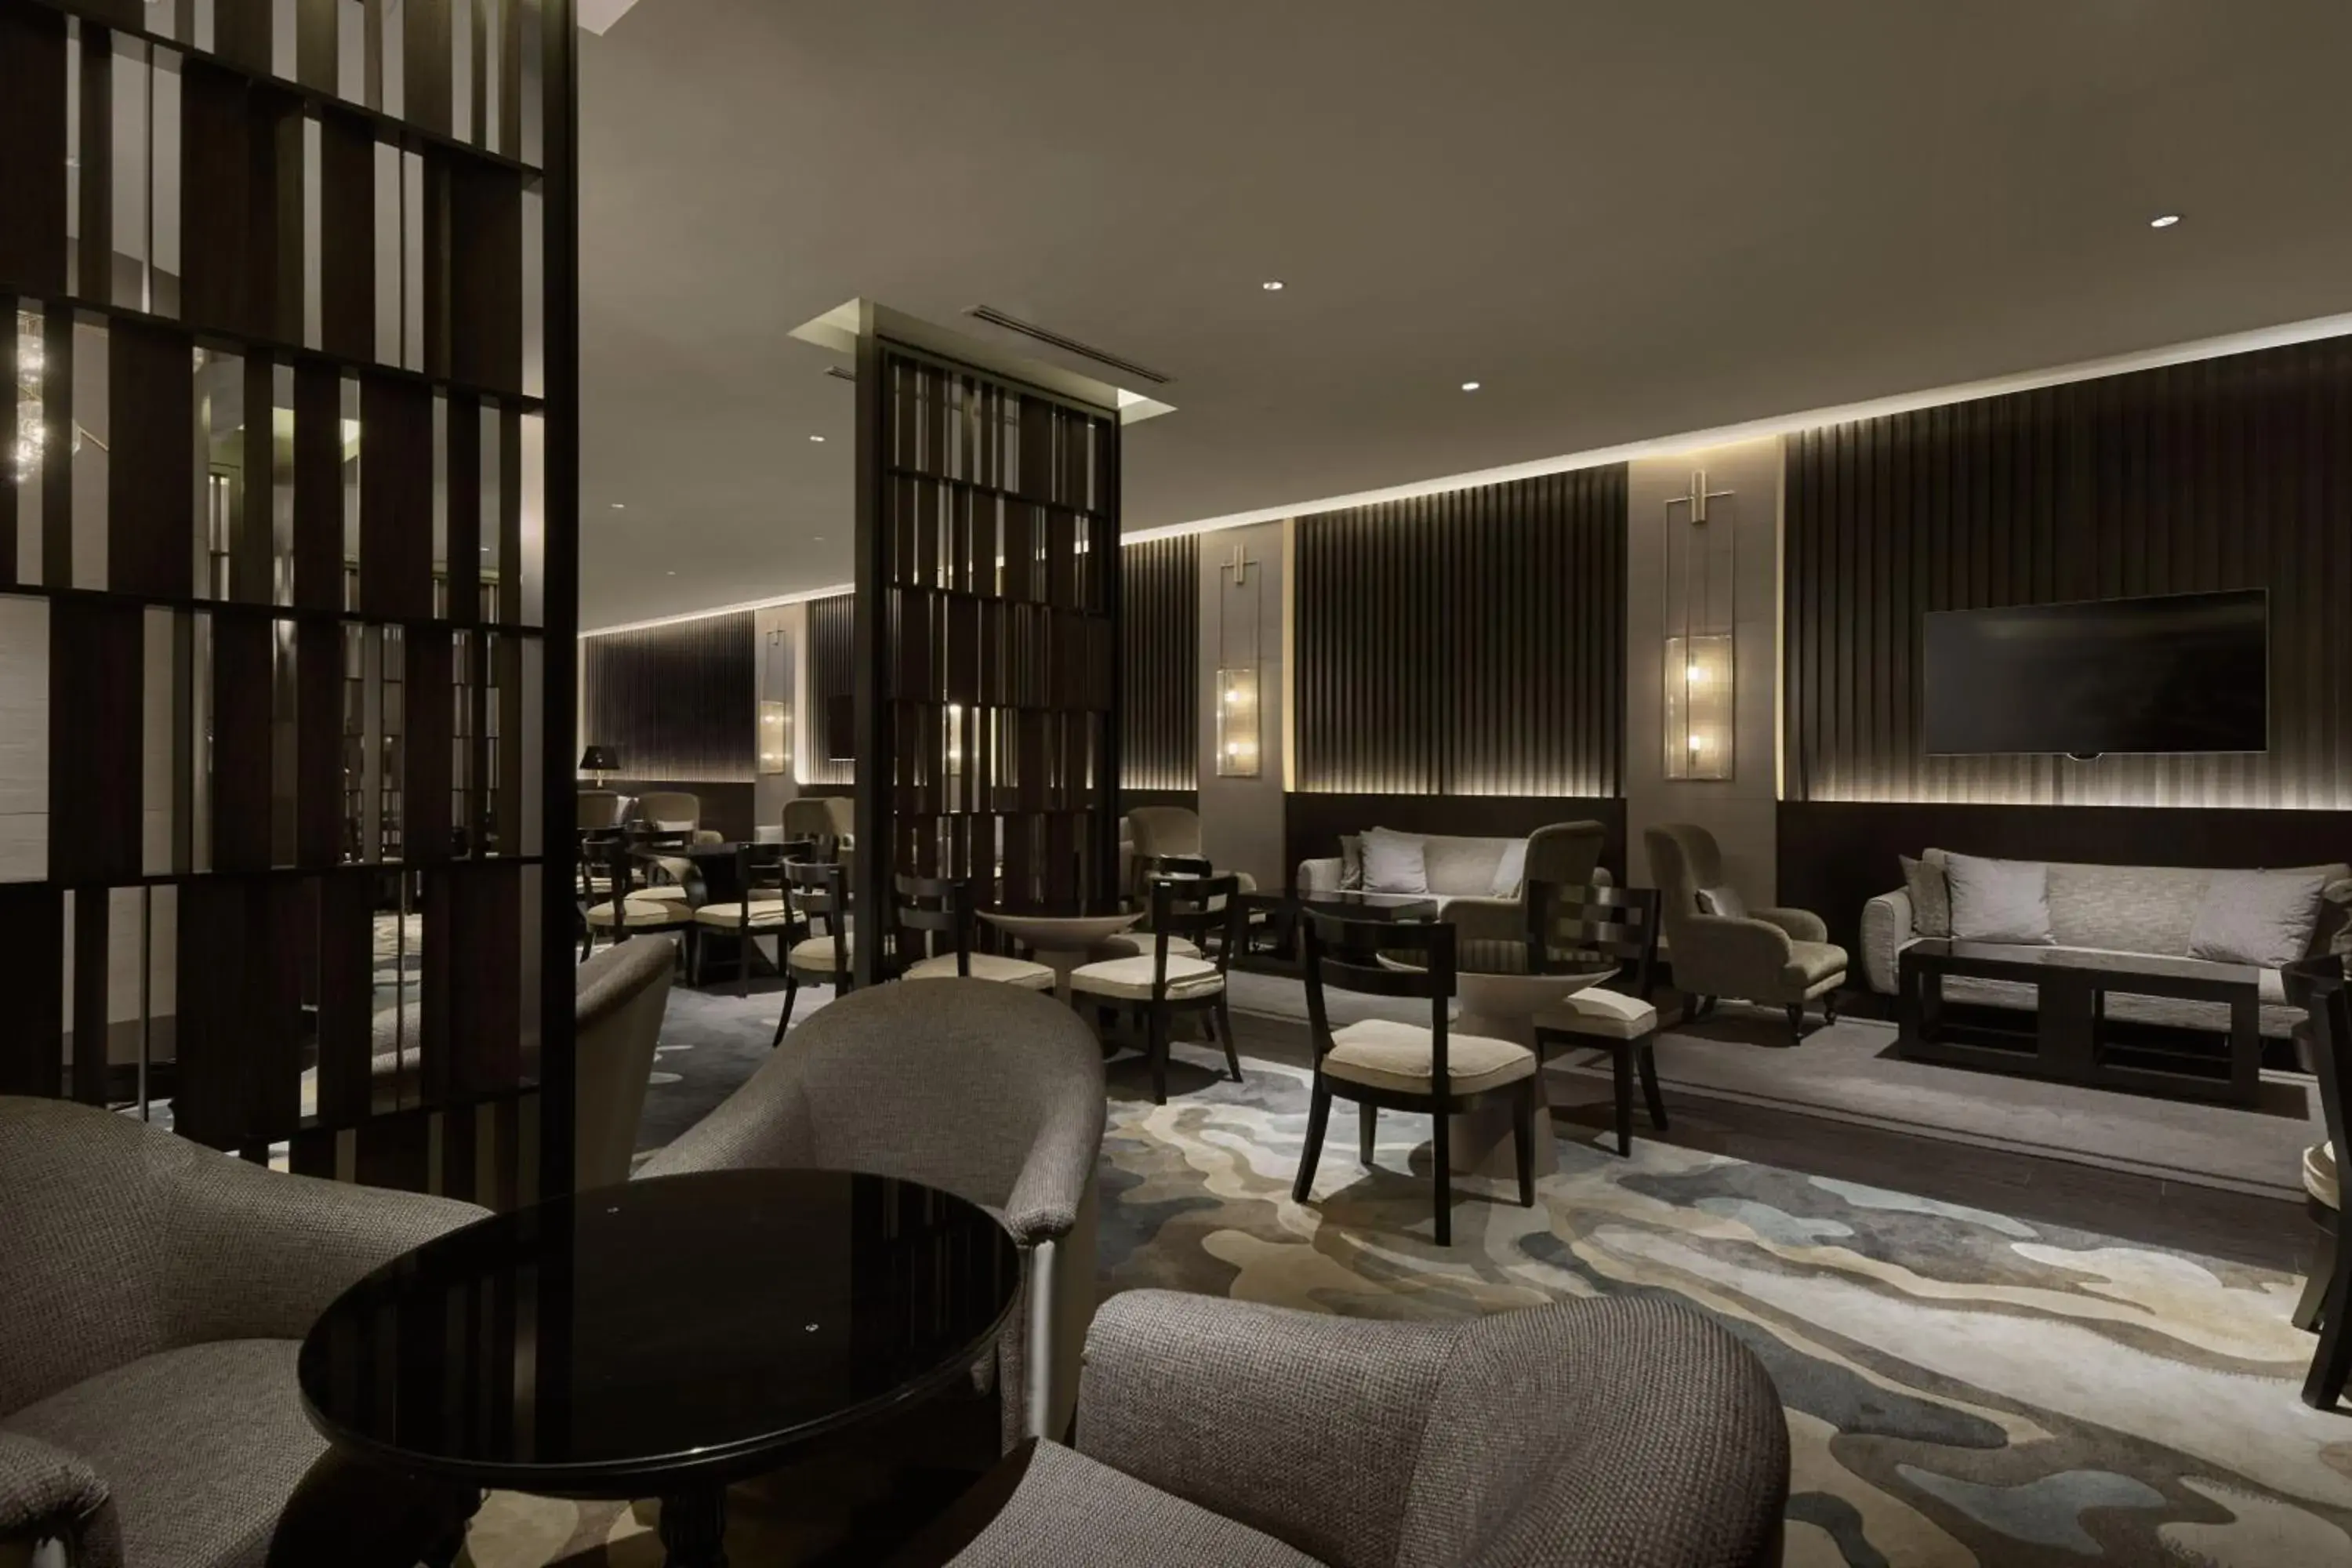 Lounge or bar, Seating Area in JW Marriott Kuala Lumpur